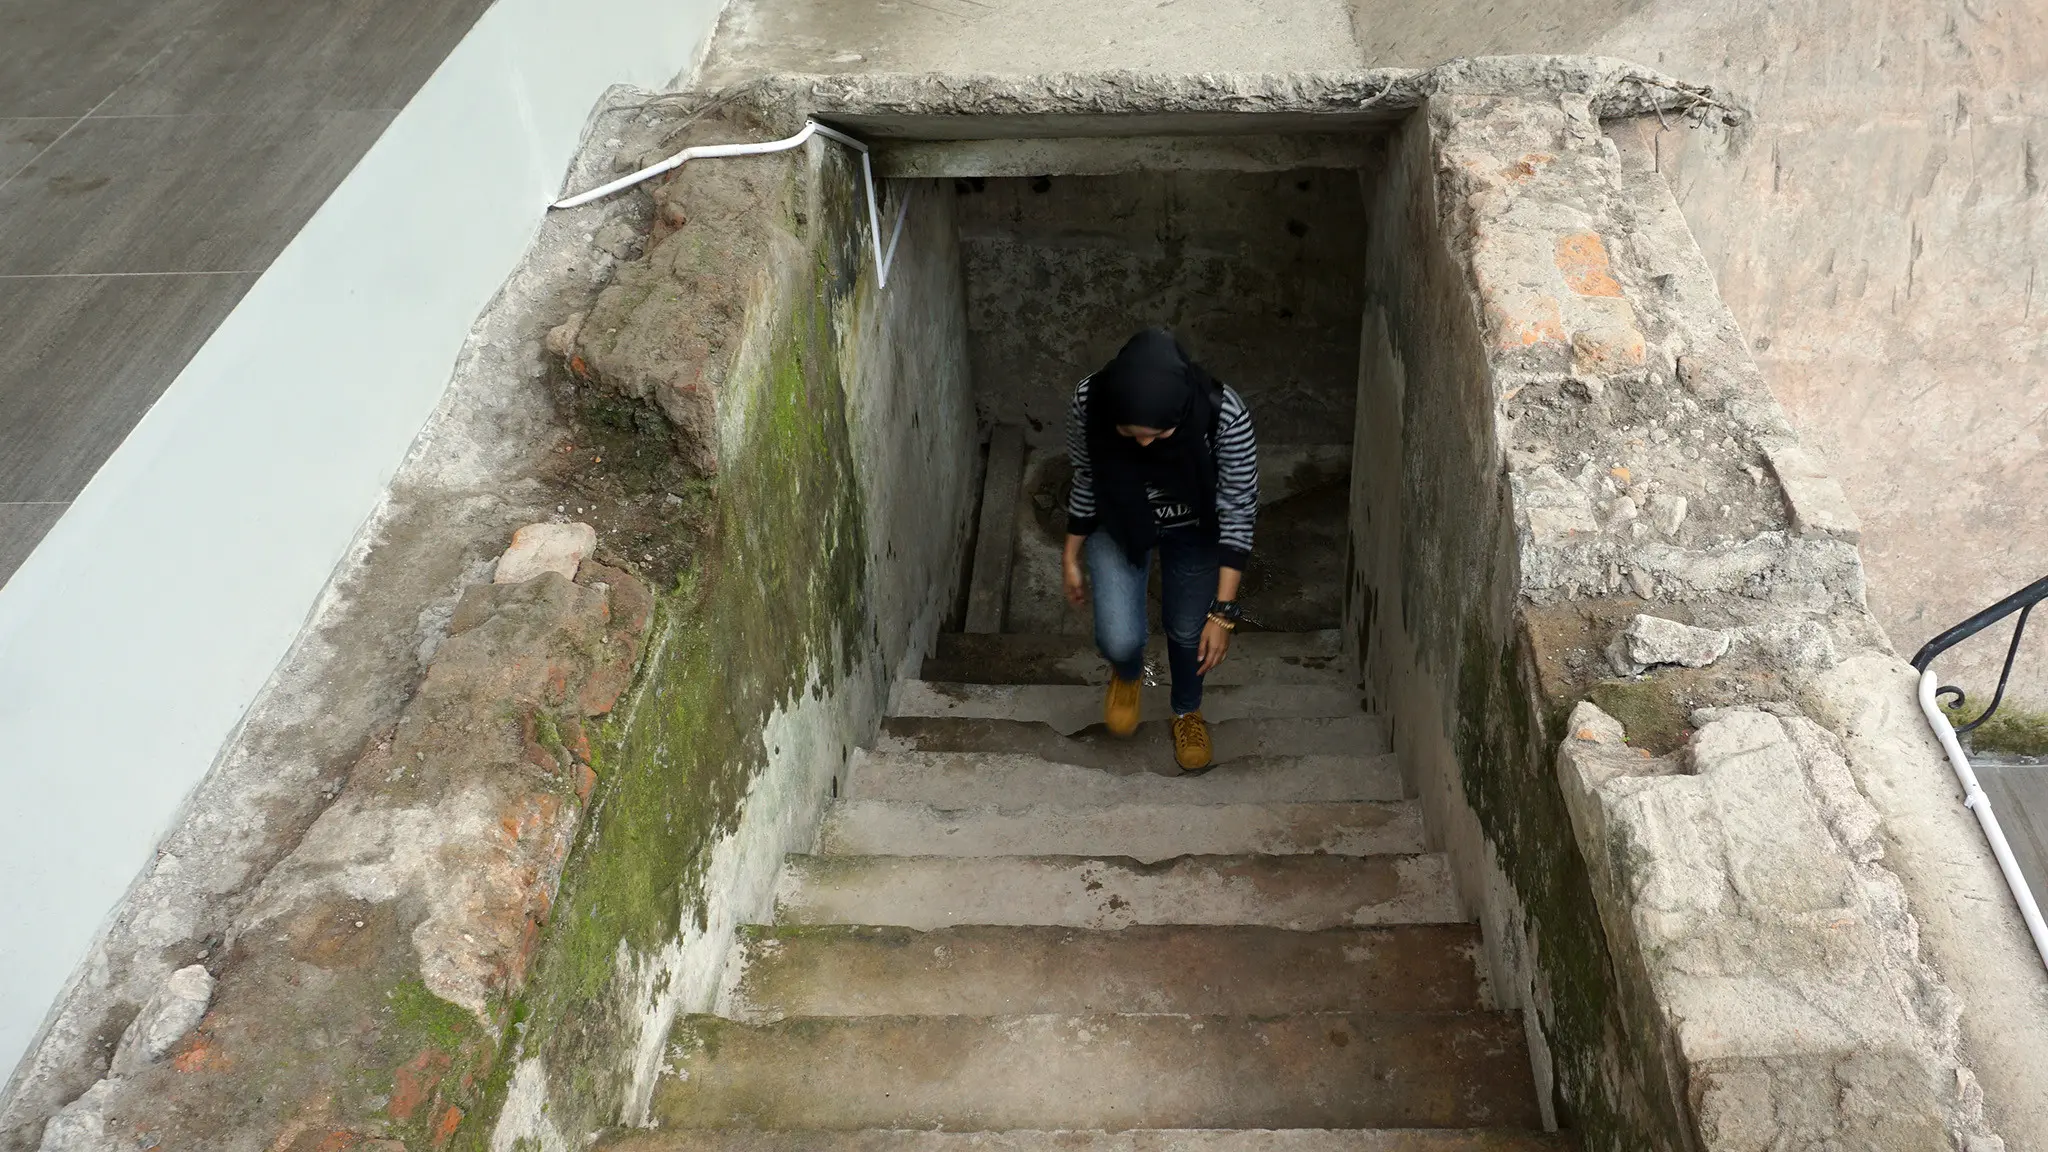 Pengunjung sedang keluar dari bungker peninggalan kolonial Belanda melalui tangga yang terdapat di setiap lorong.(/Fajar Abrori)